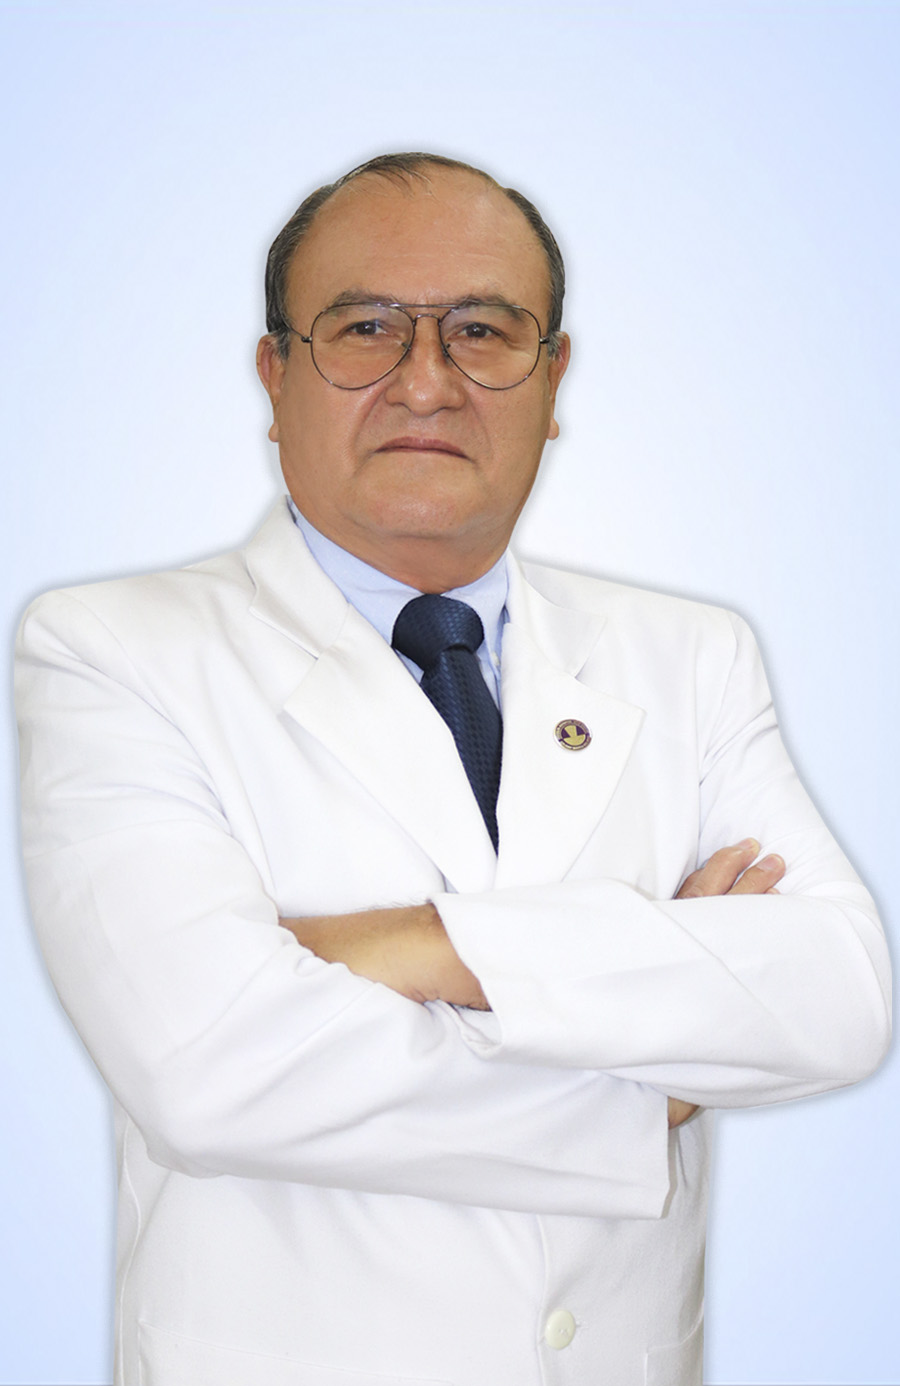 DR. FERRANDO